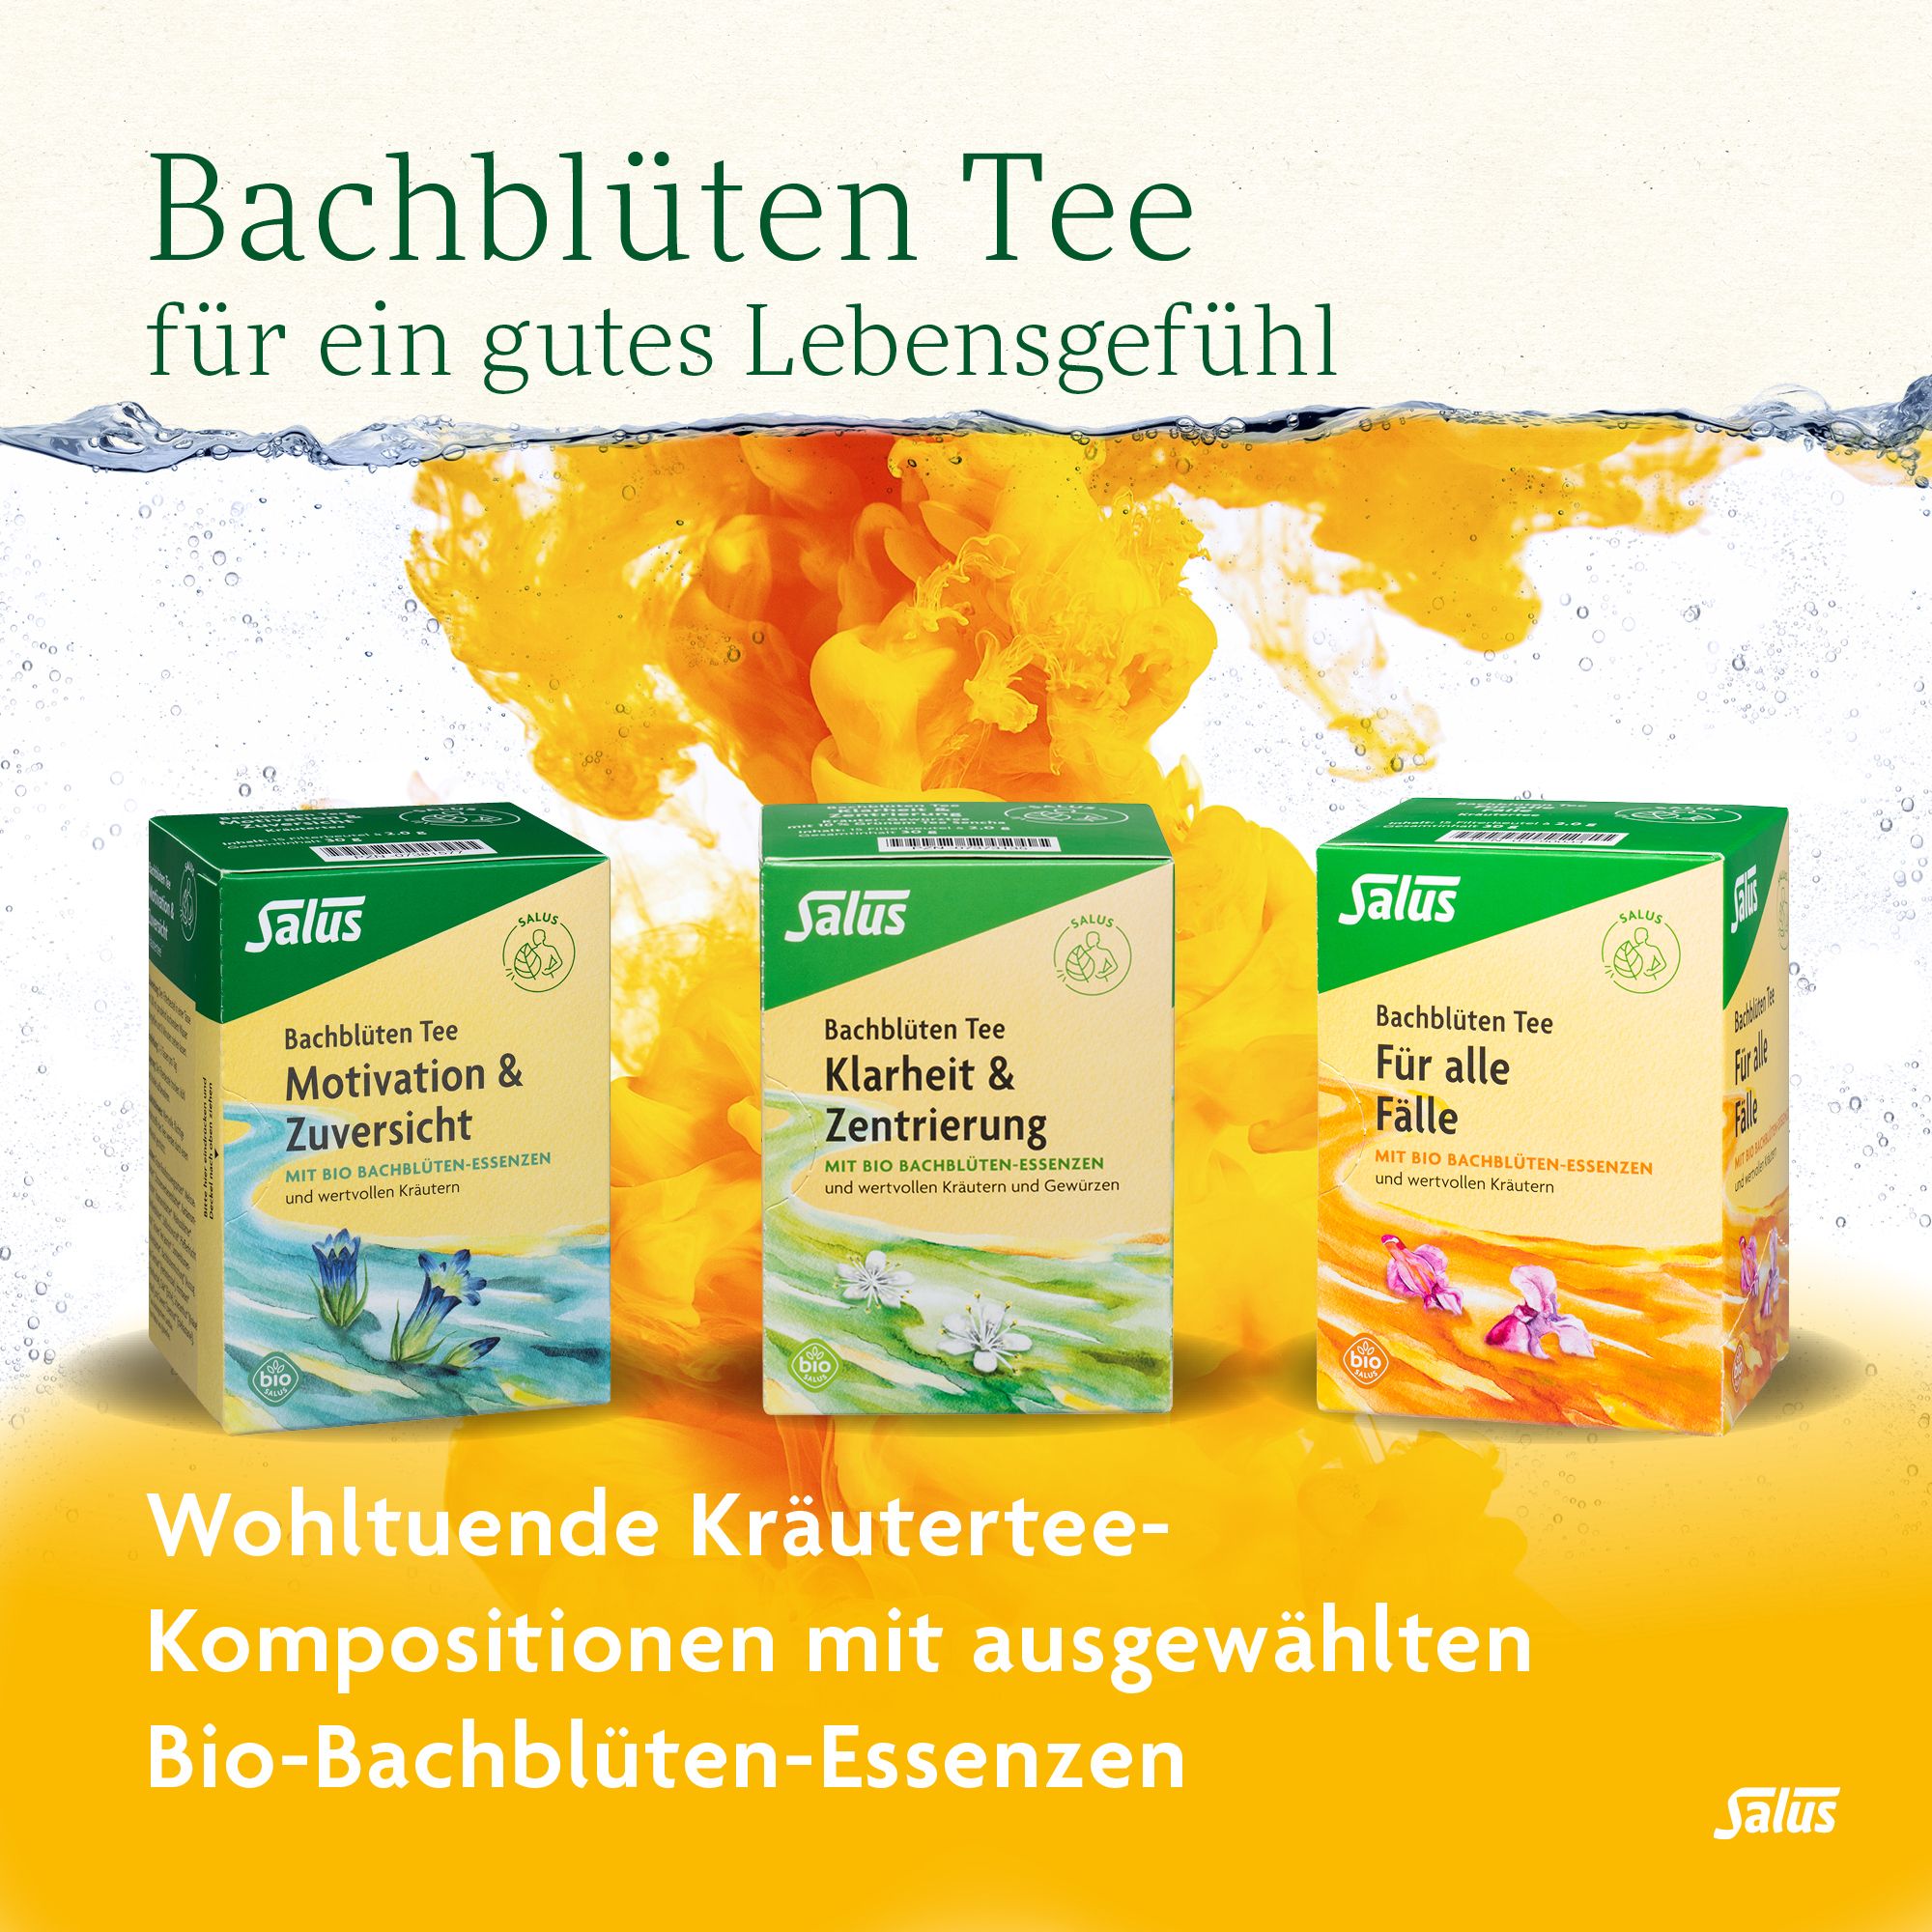 Salus® Bachblüten-Tee Kraft & Energie